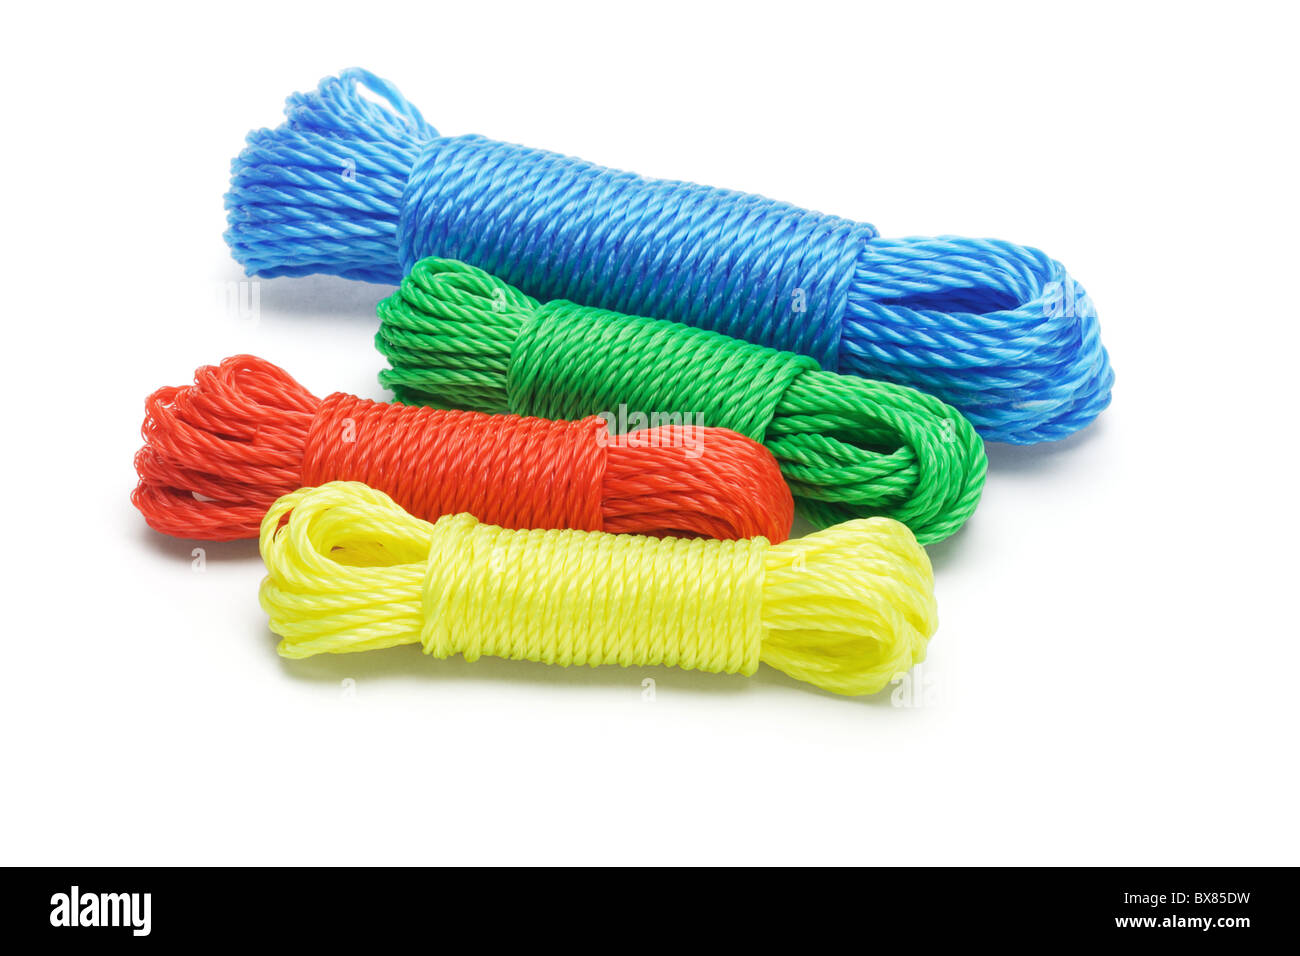 Bundles of colorful nylon ropes on white background Stock Photo